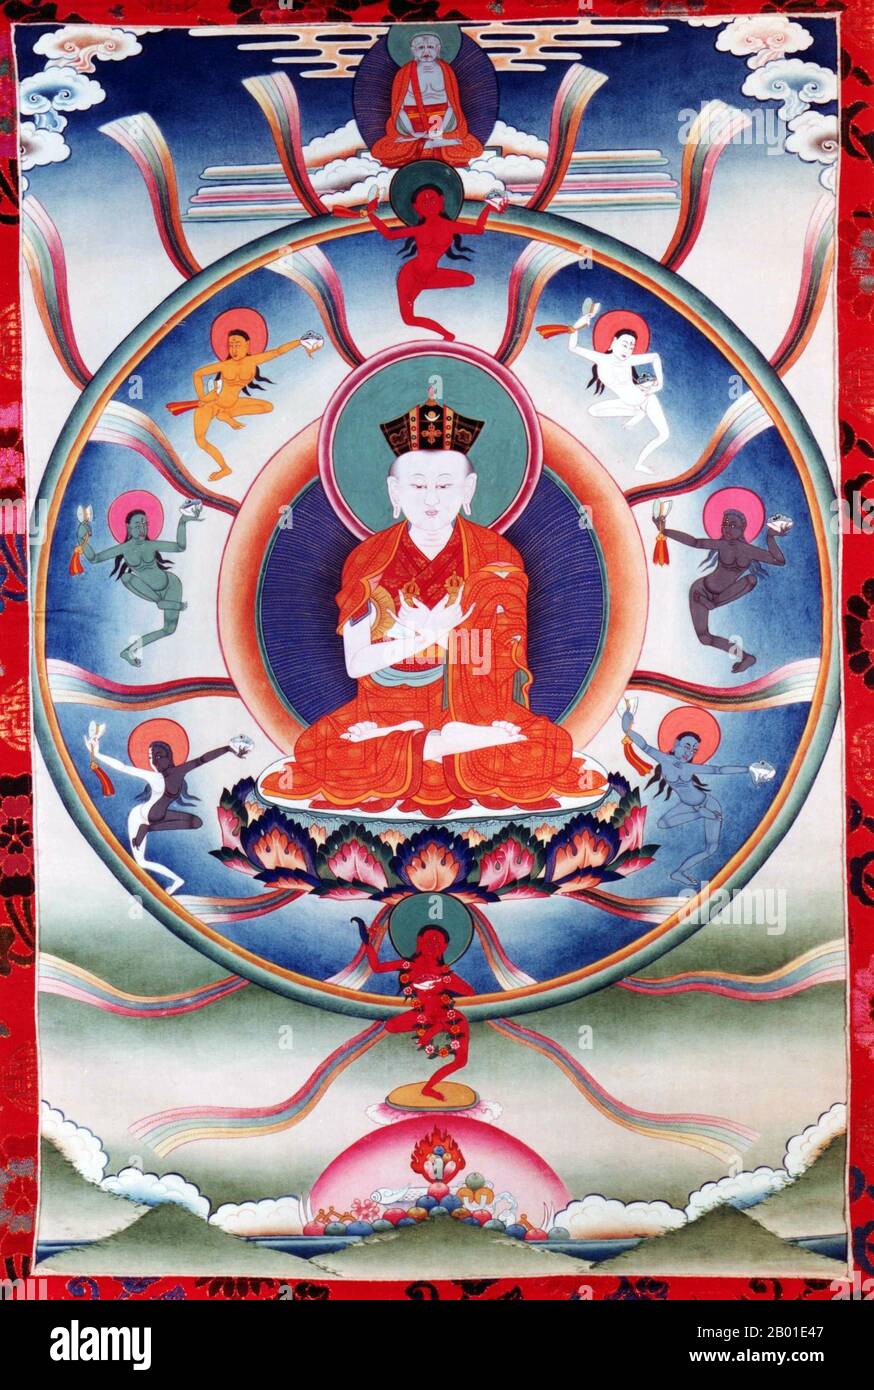 Cina/Tibet: Miko Dorje (1507-1554), il 8th Karmapa lama. Dipinto di Thankga, 20th ° secolo. Mikyö Dorje/Mikyo Dorje fu l'ottava Gyalwa Karmapa, capo della Scuola di Buddismo Tibetano di Kagyu. Mikyö Dorje è nato a Satam, Kham. Secondo la leggenda, dopo essere nato disse: "Sono Karmapa", e fu riconosciuto da Tai Situpa. In questo caso c'era un altro bambino di Amdo che sosteneva di essere Karmapa. Gyaltsab Rinpoche, il reggente della regione, pensò ad una prova per decidere chi fosse il vero Karmapa. Questa è stata la prima volta che un test è stato usato per determinare una reincarnazione. Foto Stock